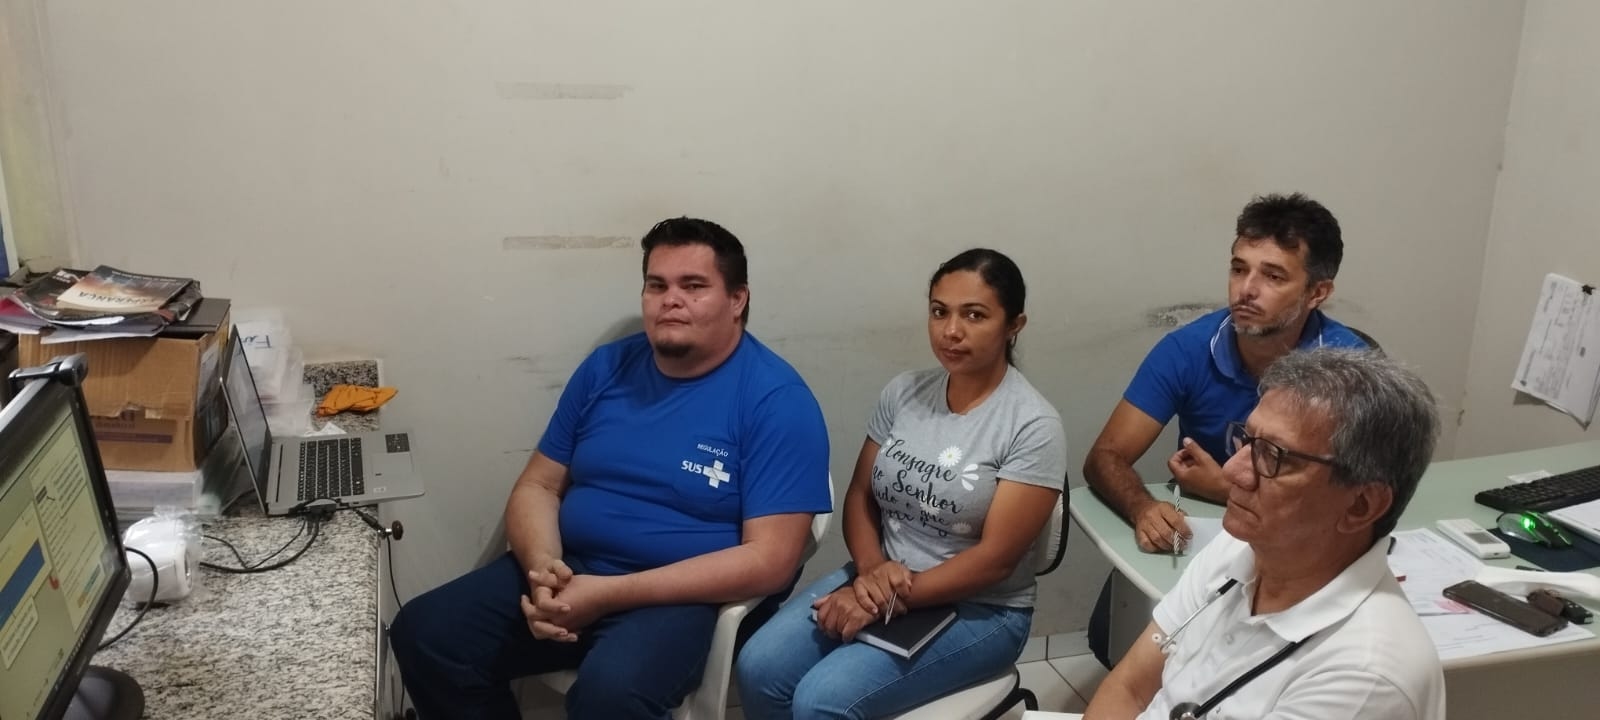 Prefeitura de Couto Magalhães promove treinamento para implantação do projeto de Telemedicina em parceria com o Hospital Albert Einstein

